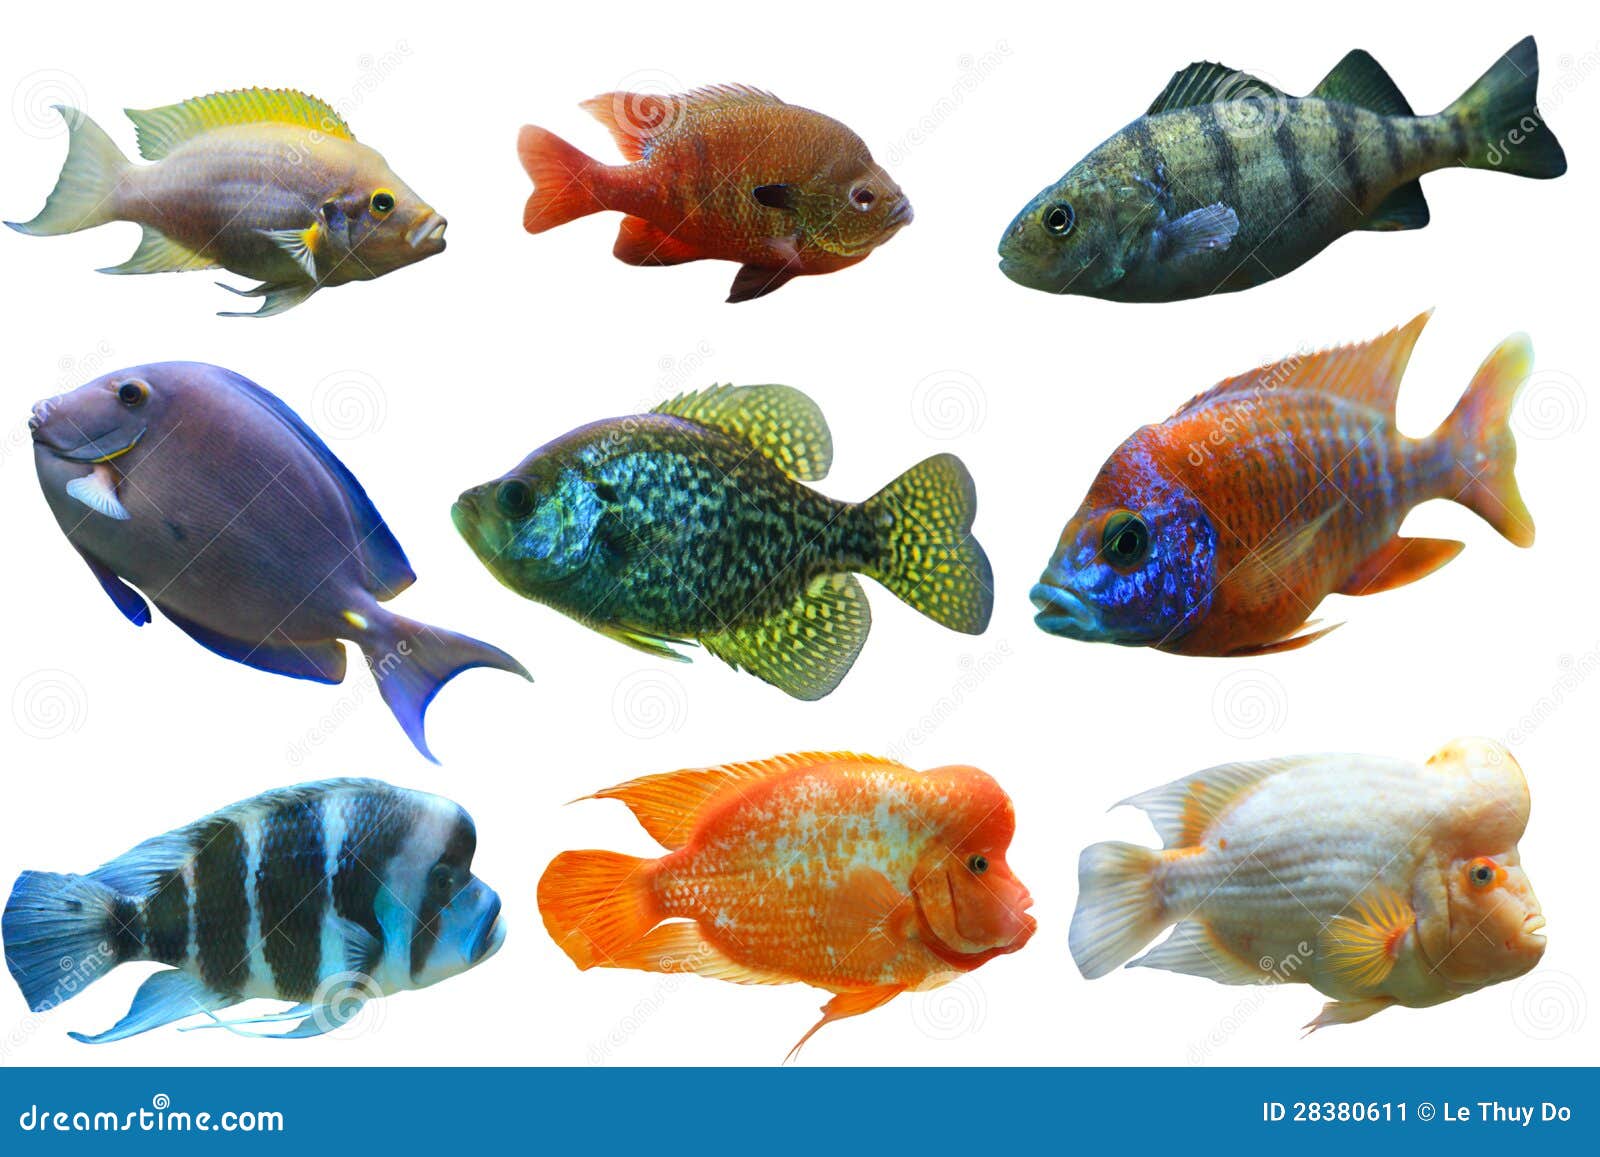 Рыбка на букву т. Рыбки для аквариума. Разноцветные рыбы для детей. Аквариумные рыбки для детей. Разноцветные рыбки для печати.